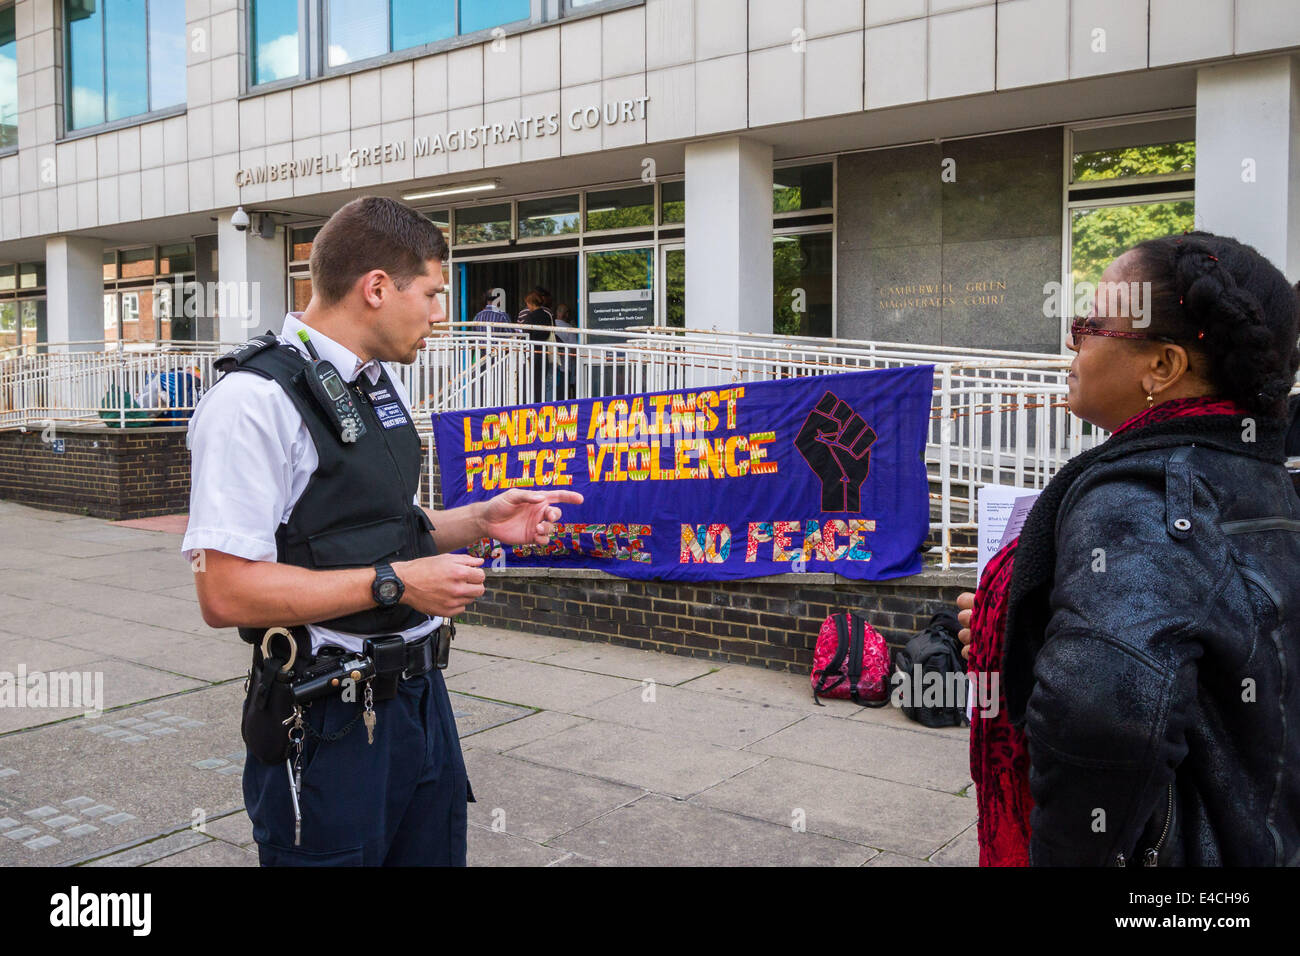 Londres, Royaume-Uni. 8 juillet 2014. Protestation contre la brutalité policière à Camberwell Green Magistrates Court à Londres Crédit : Guy Josse/Alamy Live News Banque D'Images